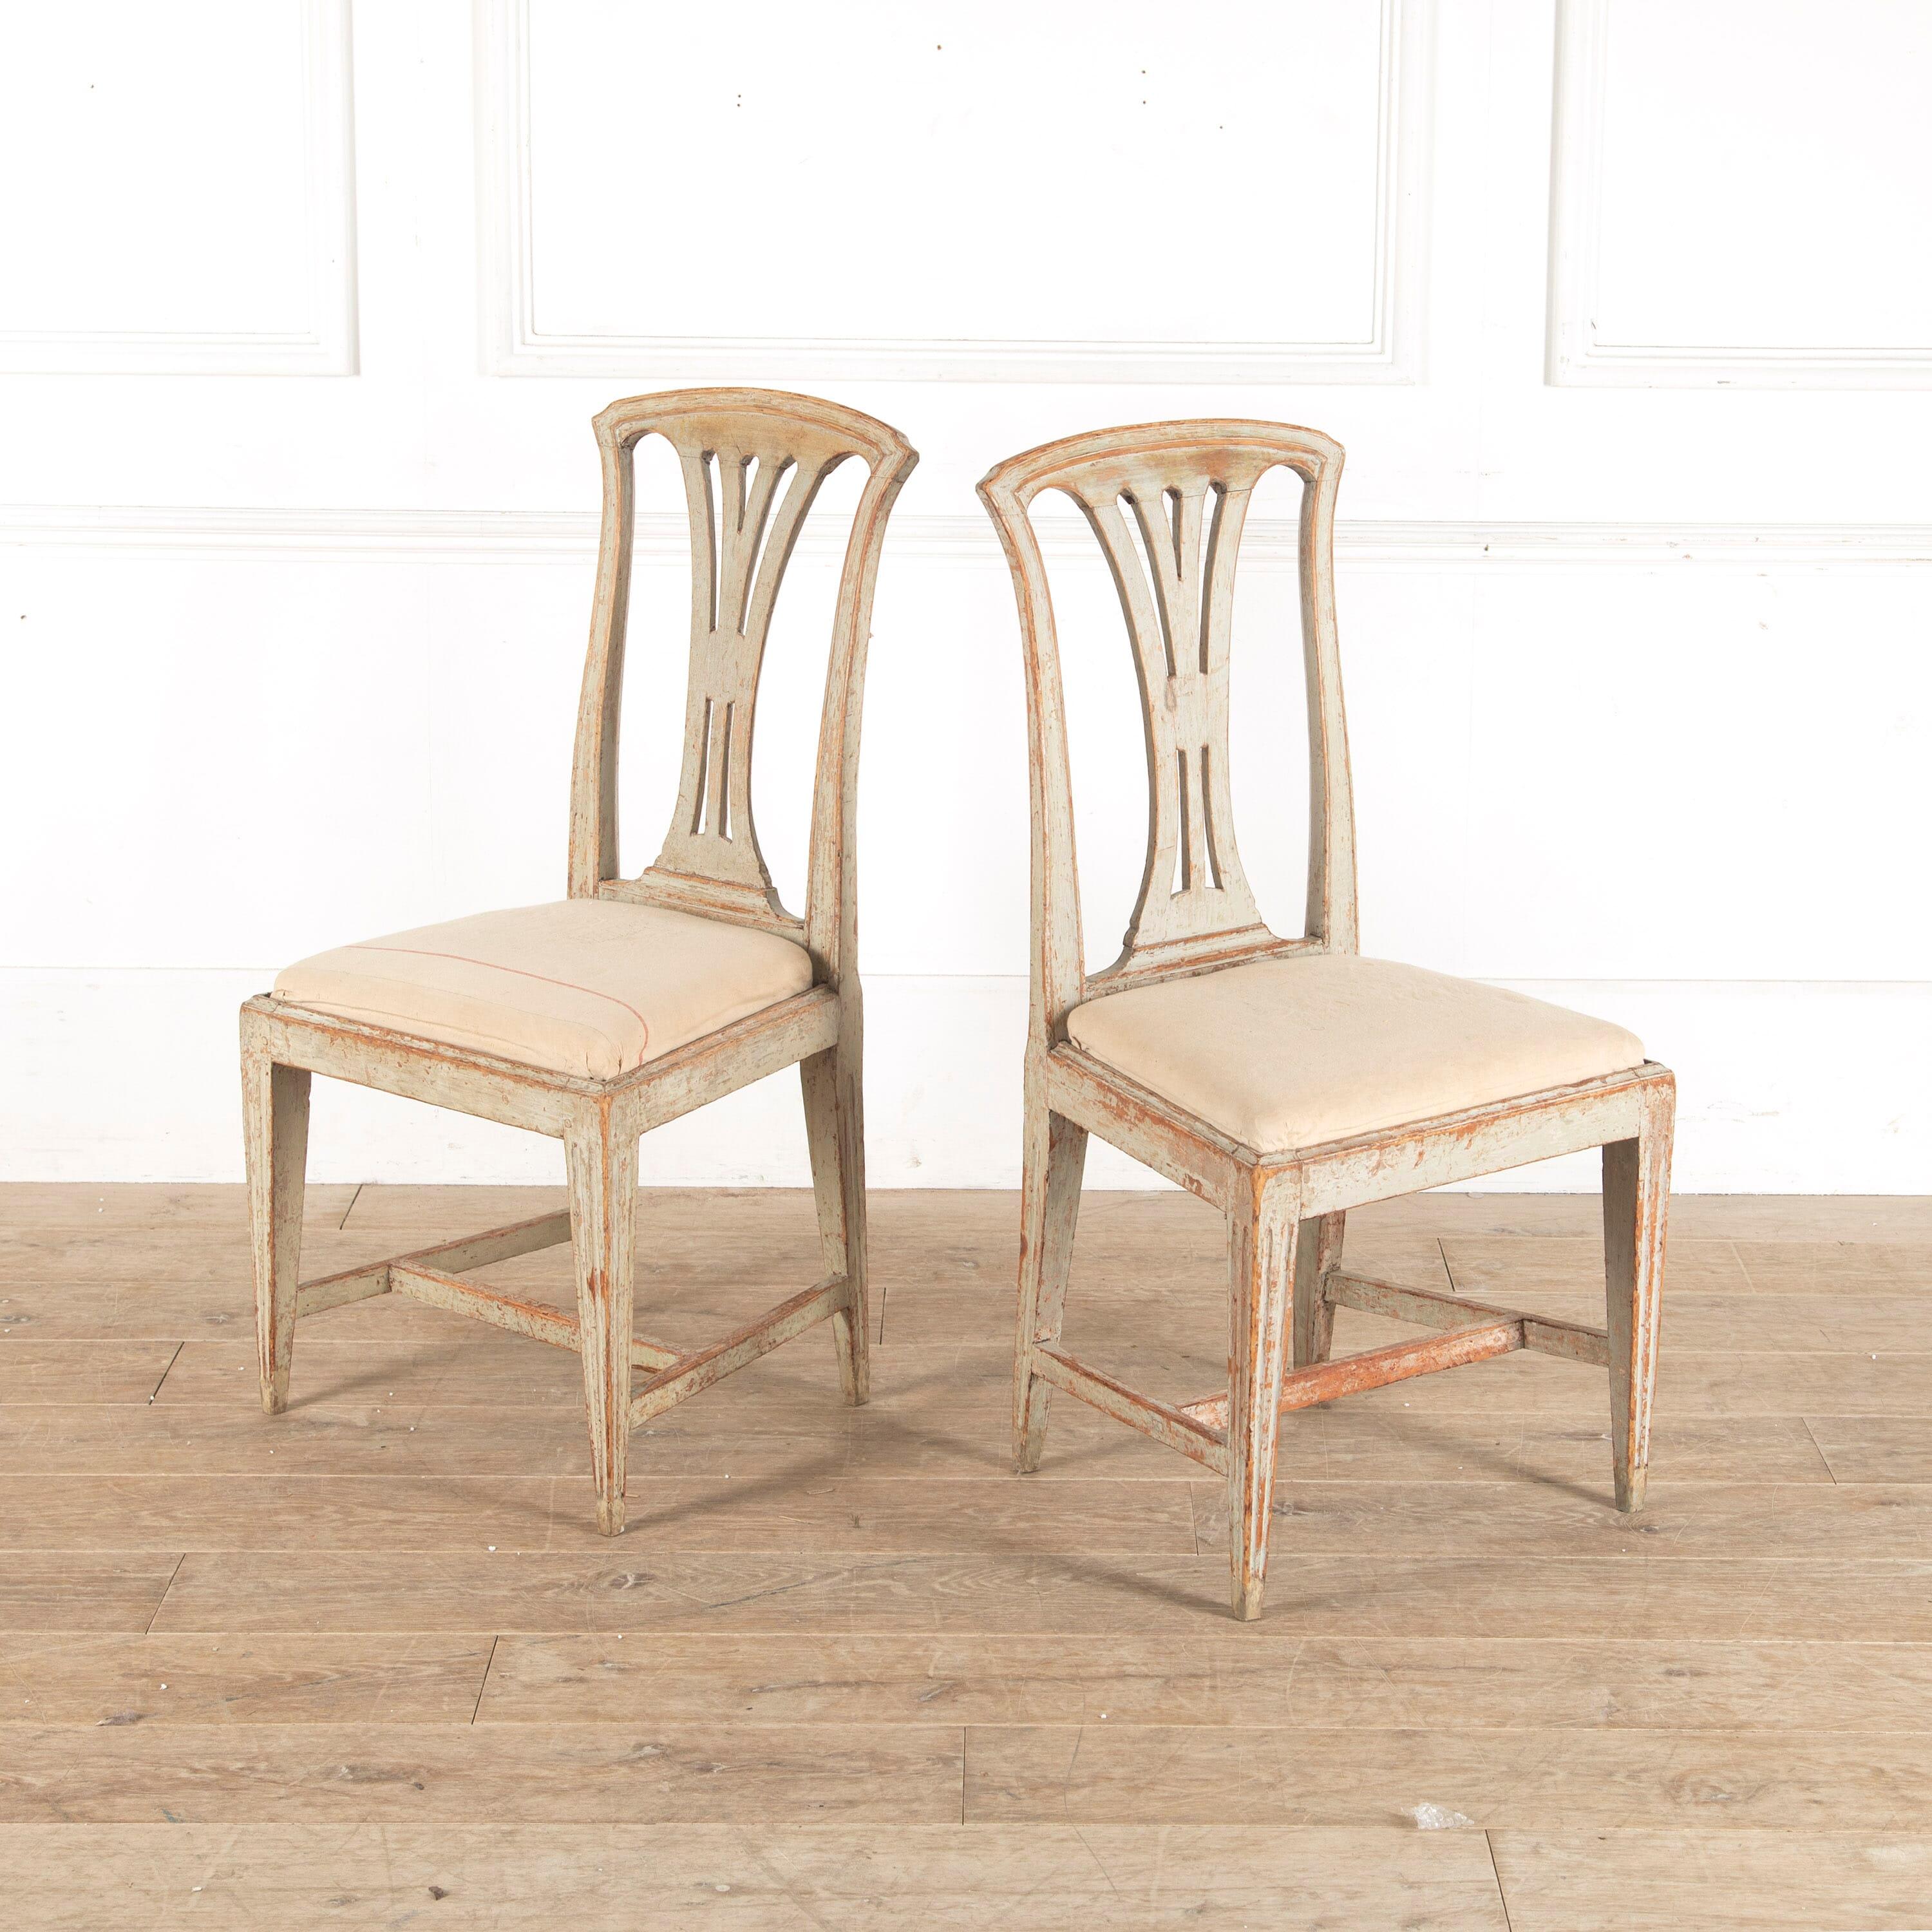 Paire de chaises fabriquées par le maître artisan Johan Erik Hoglander à Stockholm (1750-1813). Considéré comme l'un des meilleurs fabricants de chaises de Suède au 18e siècle. La peinture d'origine est grattée et stabilisée pour une utilisation